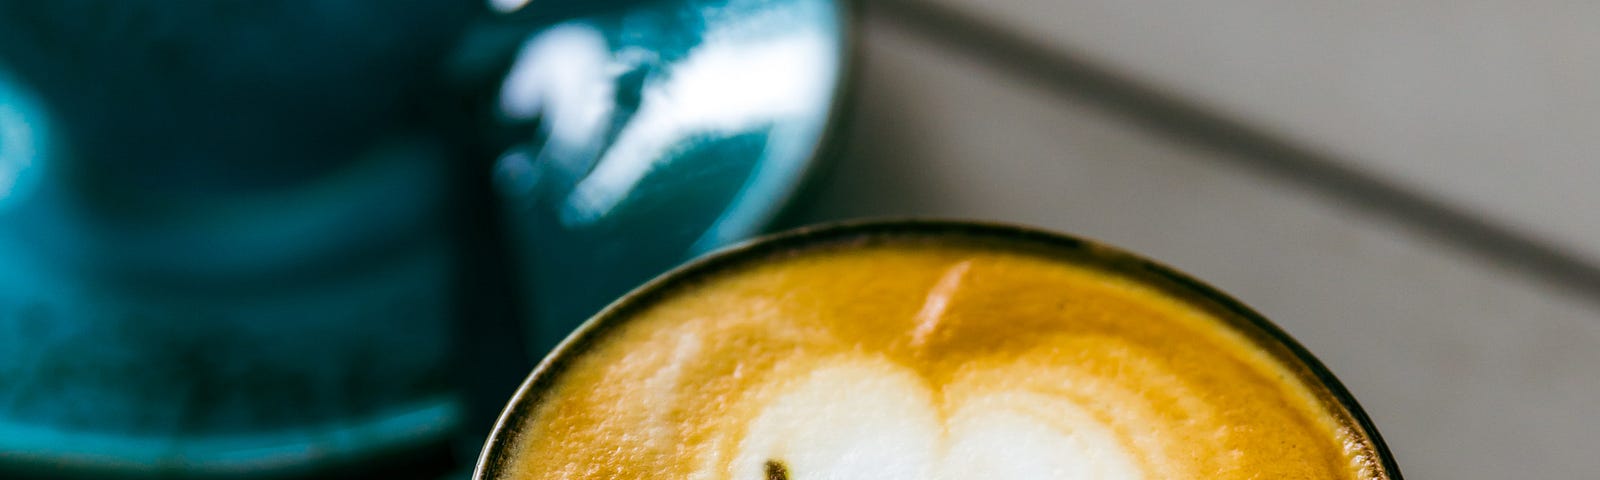 Latte art saying ‘yeah!’